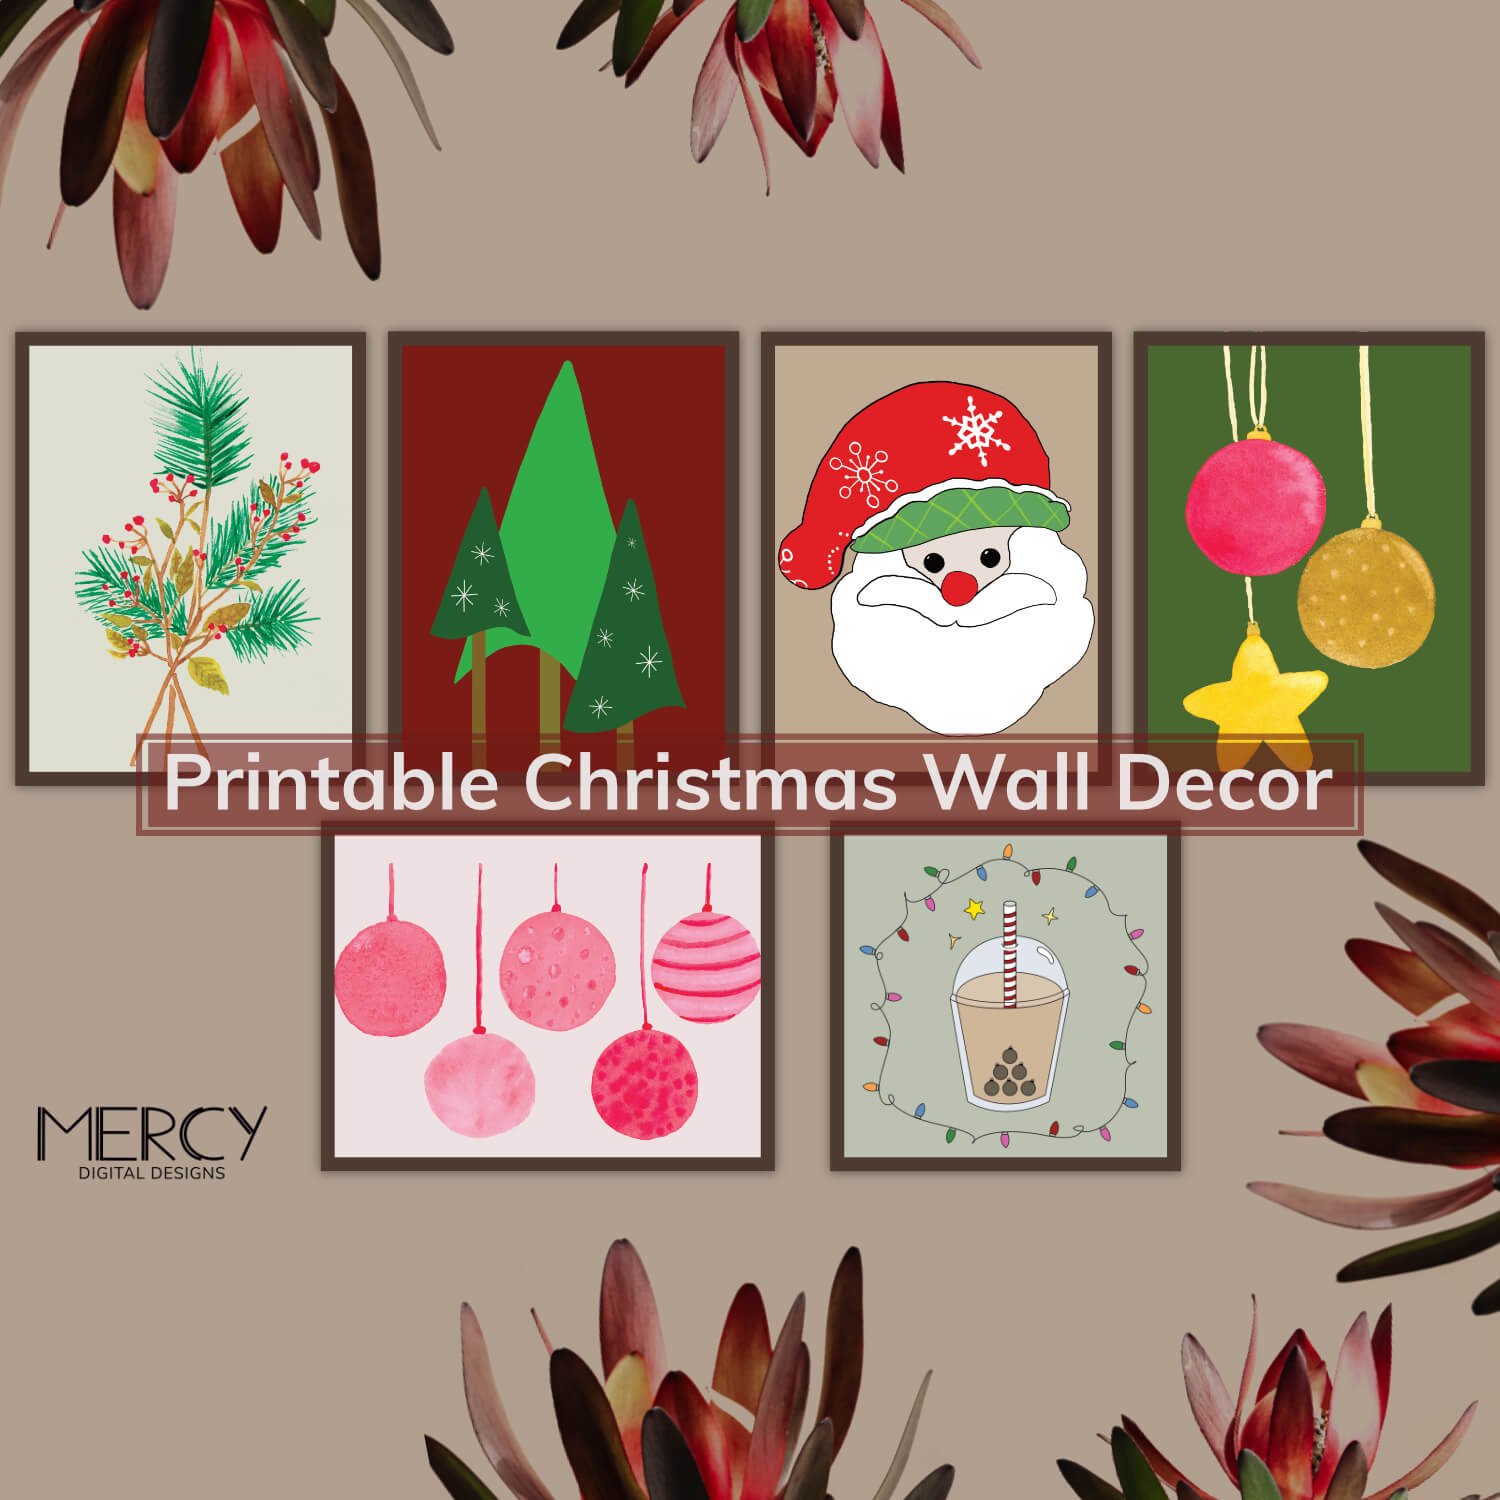 Printable Christmas Wall Decor